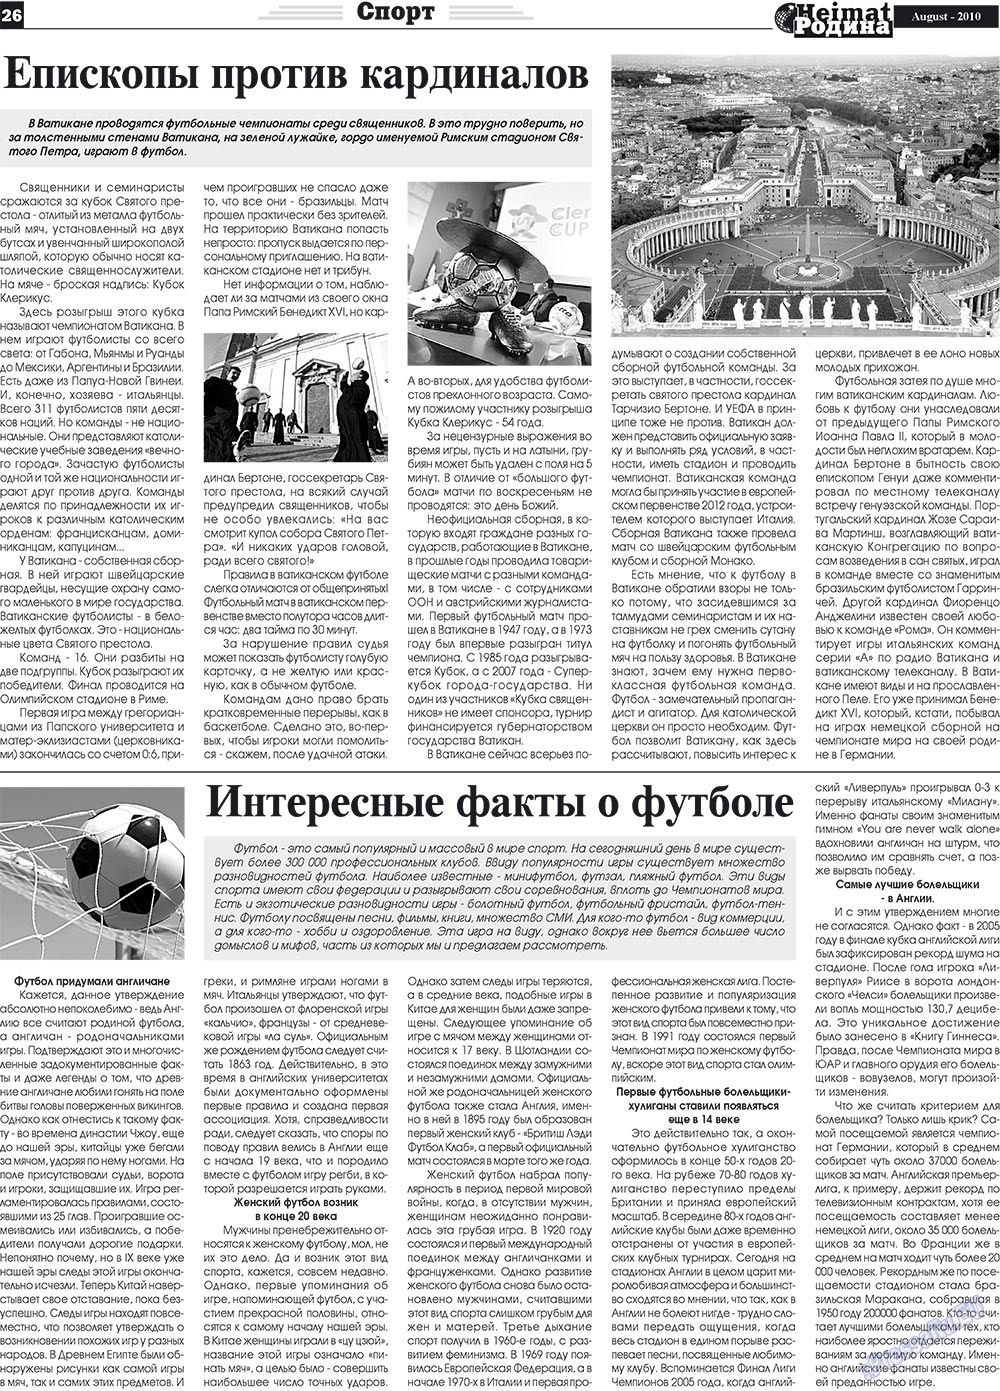 Heimat-Родина (газета). 2010 год, номер 8, стр. 26